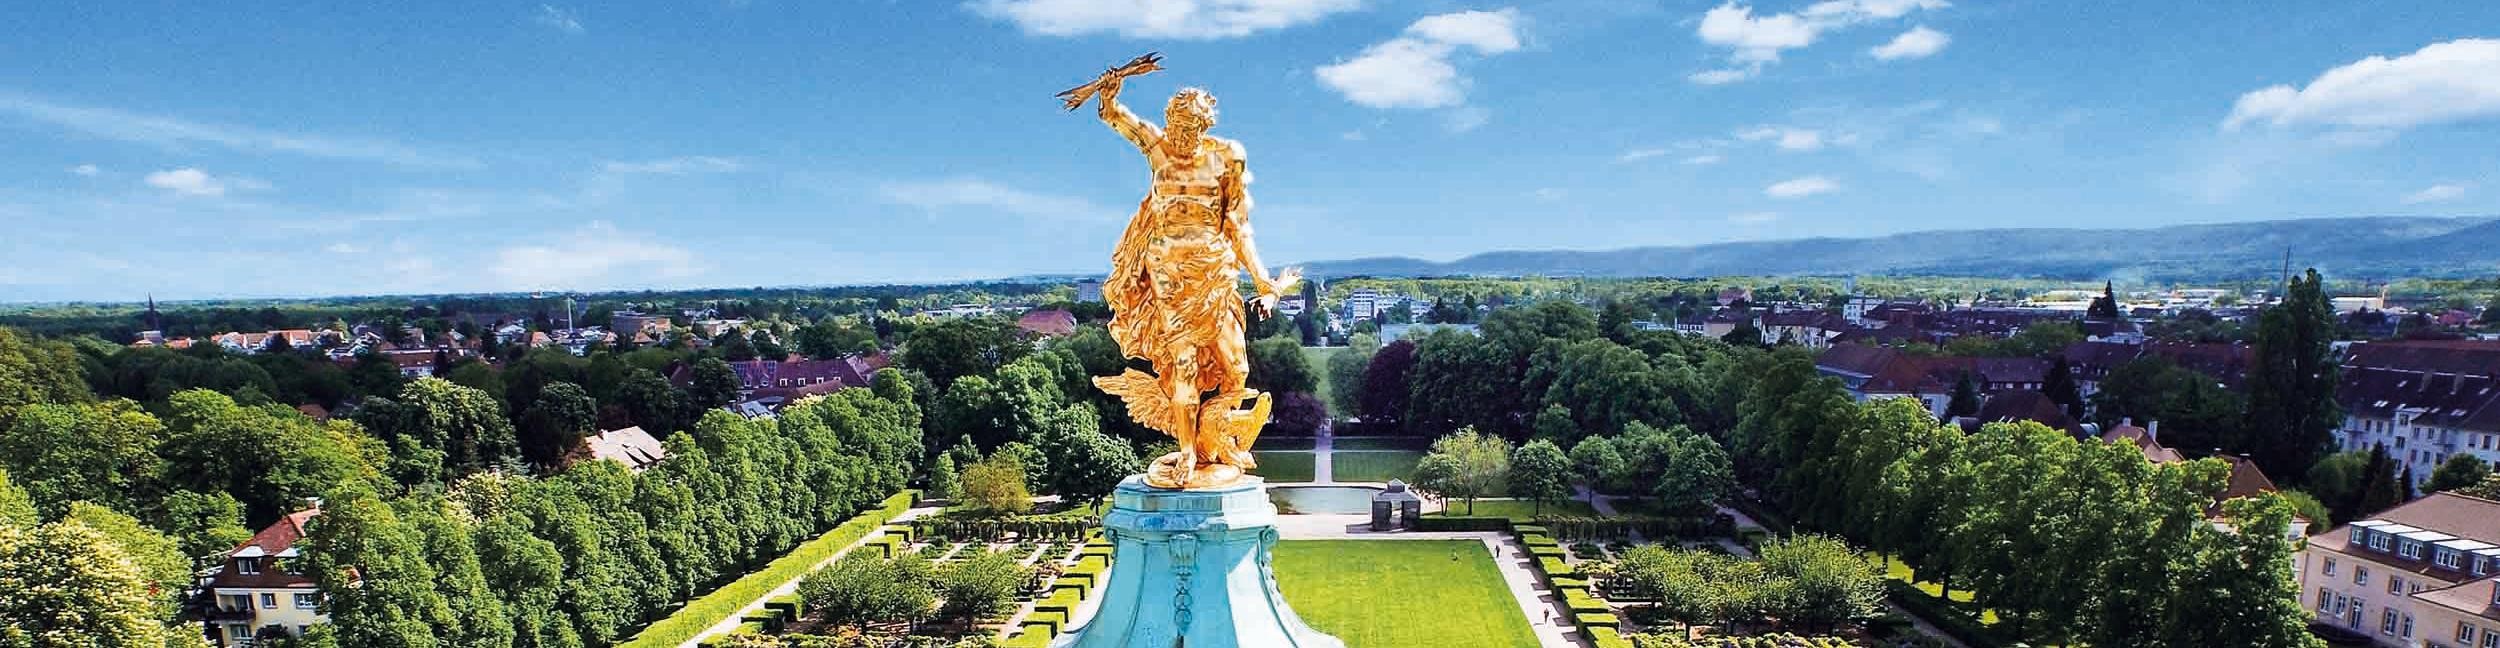 Golden man at the castle Rastatt